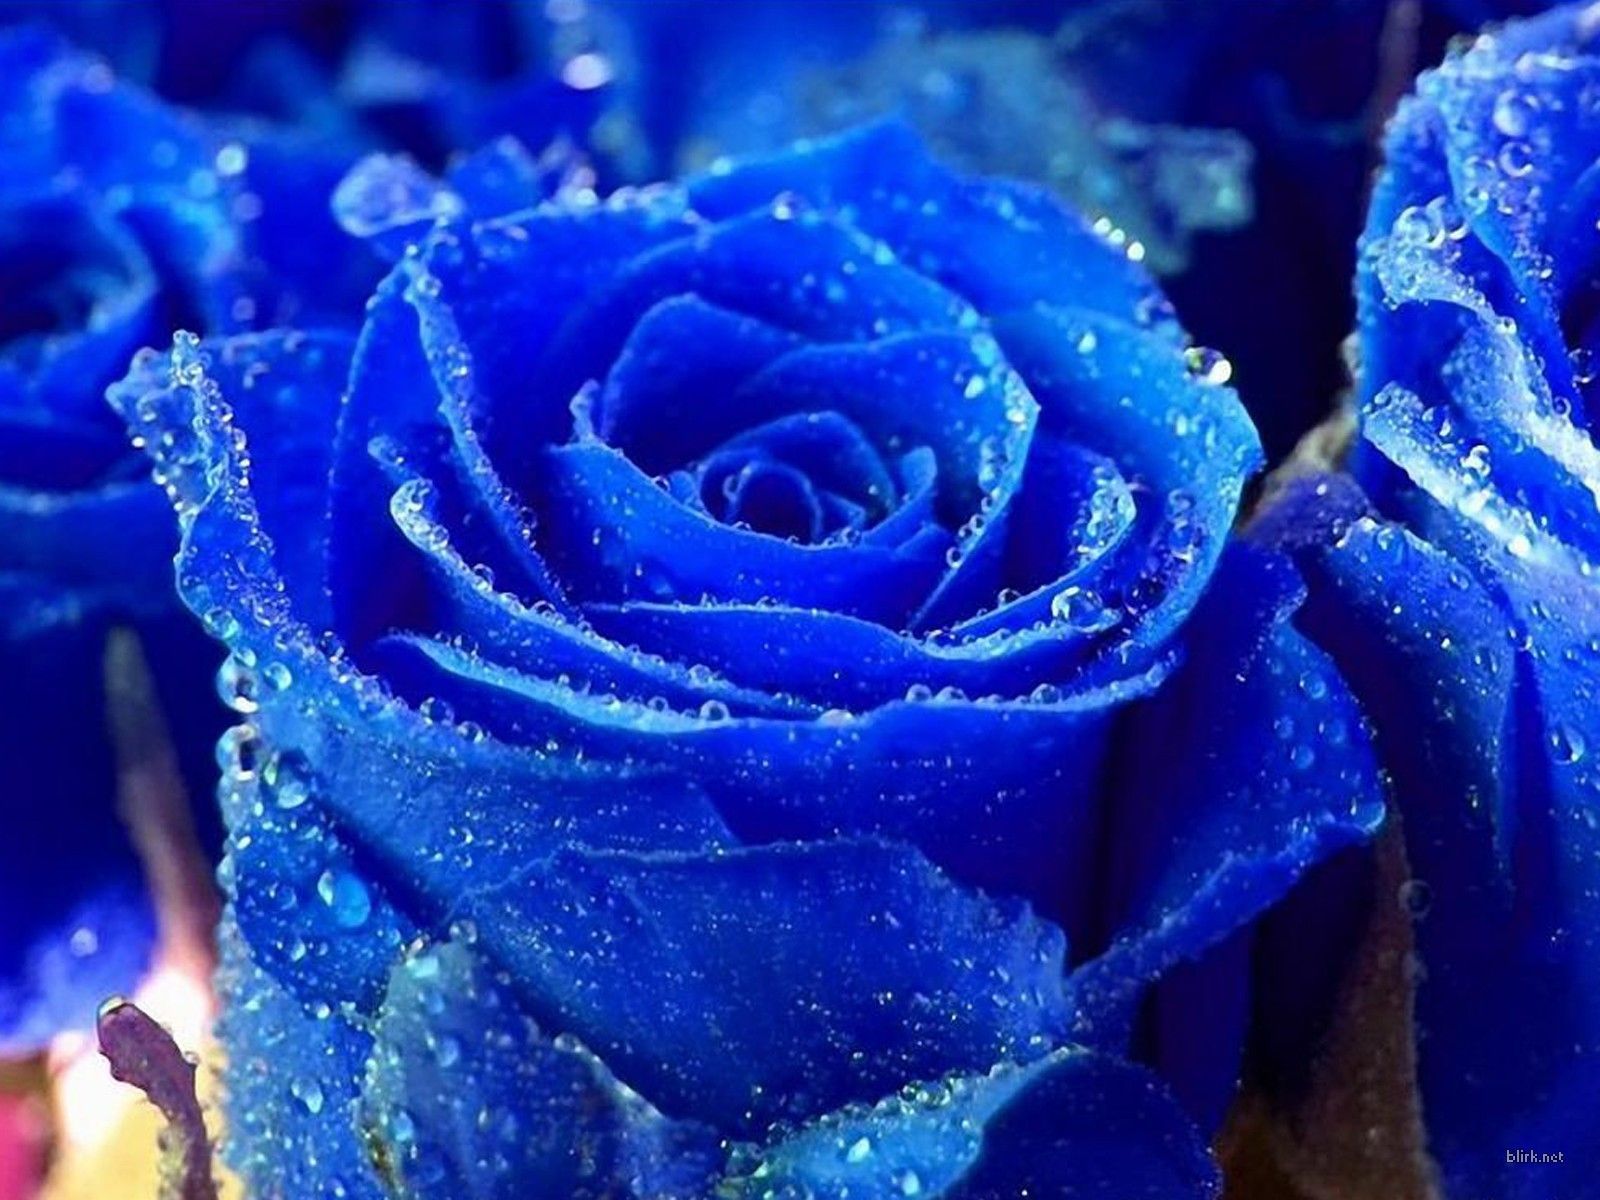 Rose Wallpaper for Desktop. Blue roses wallpaper, Blue flower